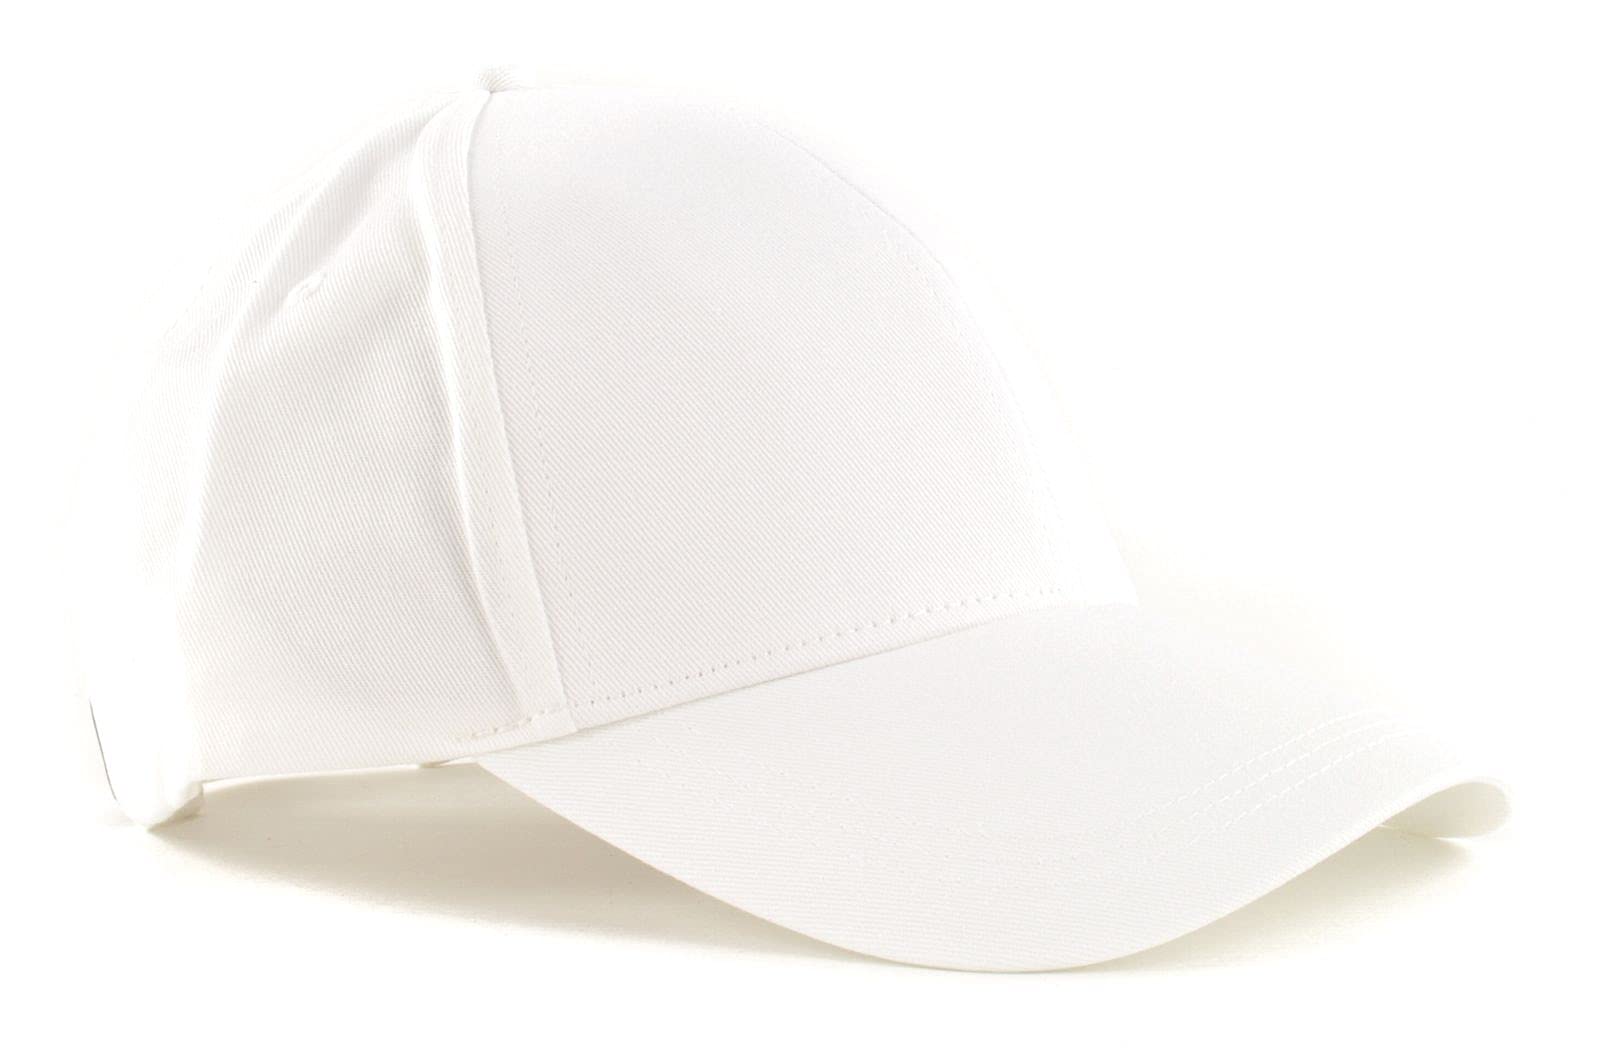 Calvin Klein Herren Cap Basecap, Weiß (White), Einheitsgröße